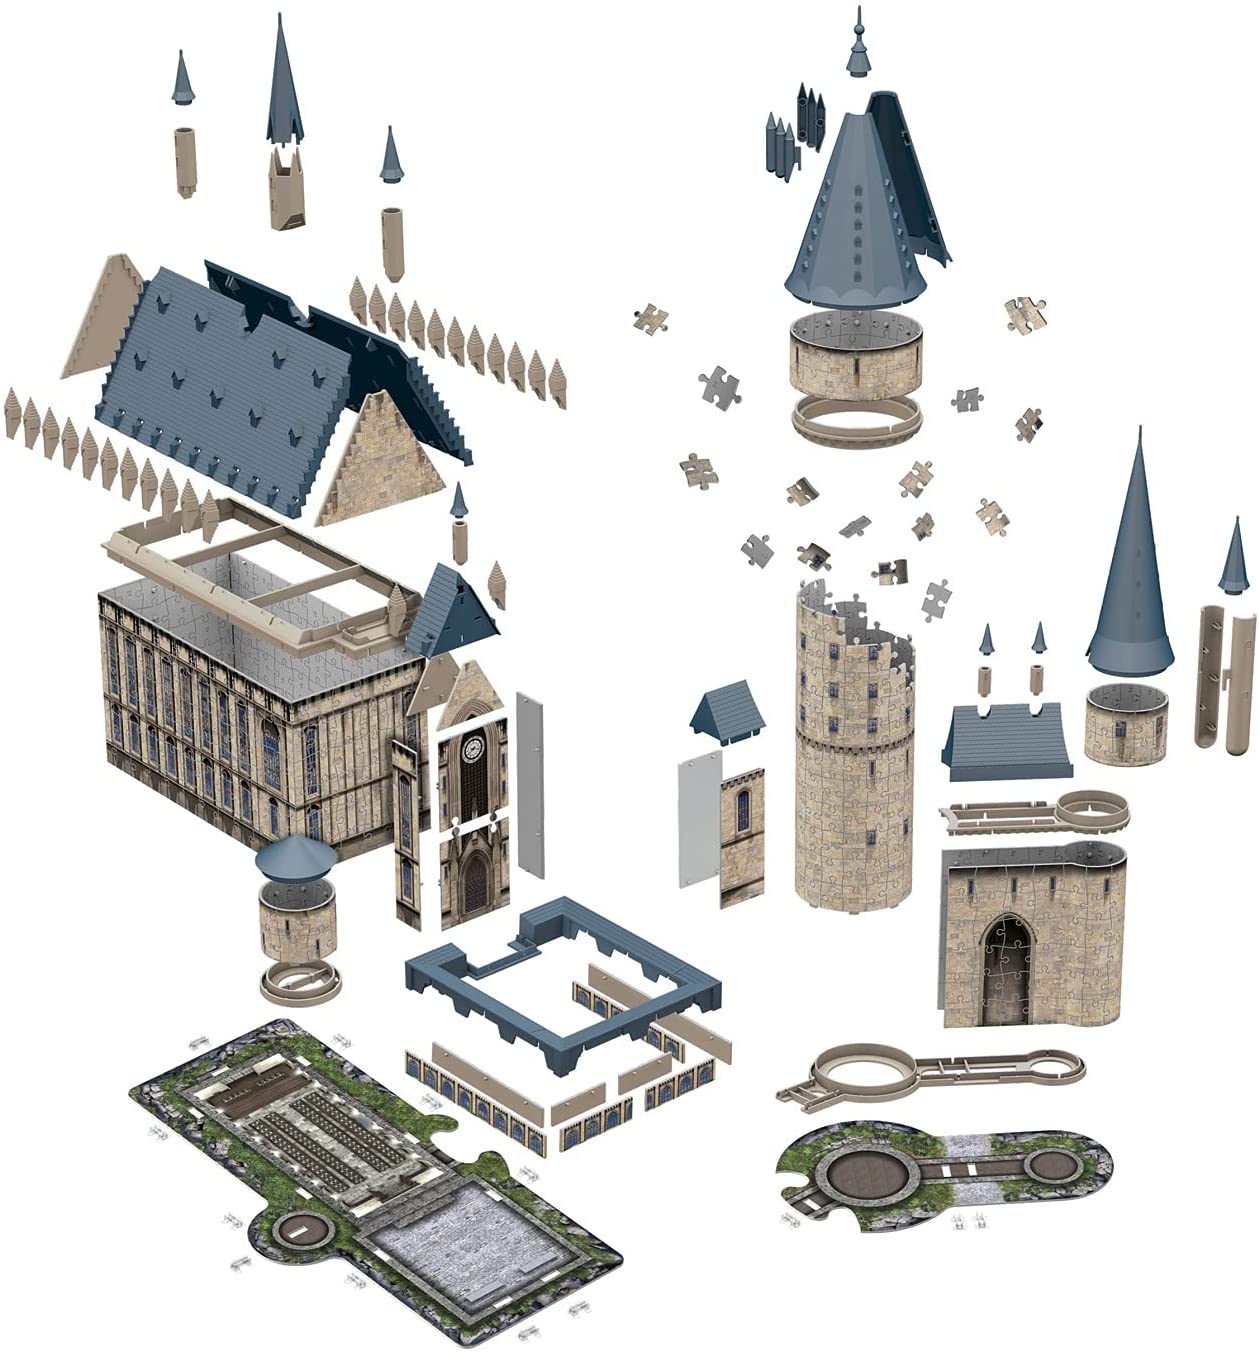 3D Hogwarts Castle - 540 brikker